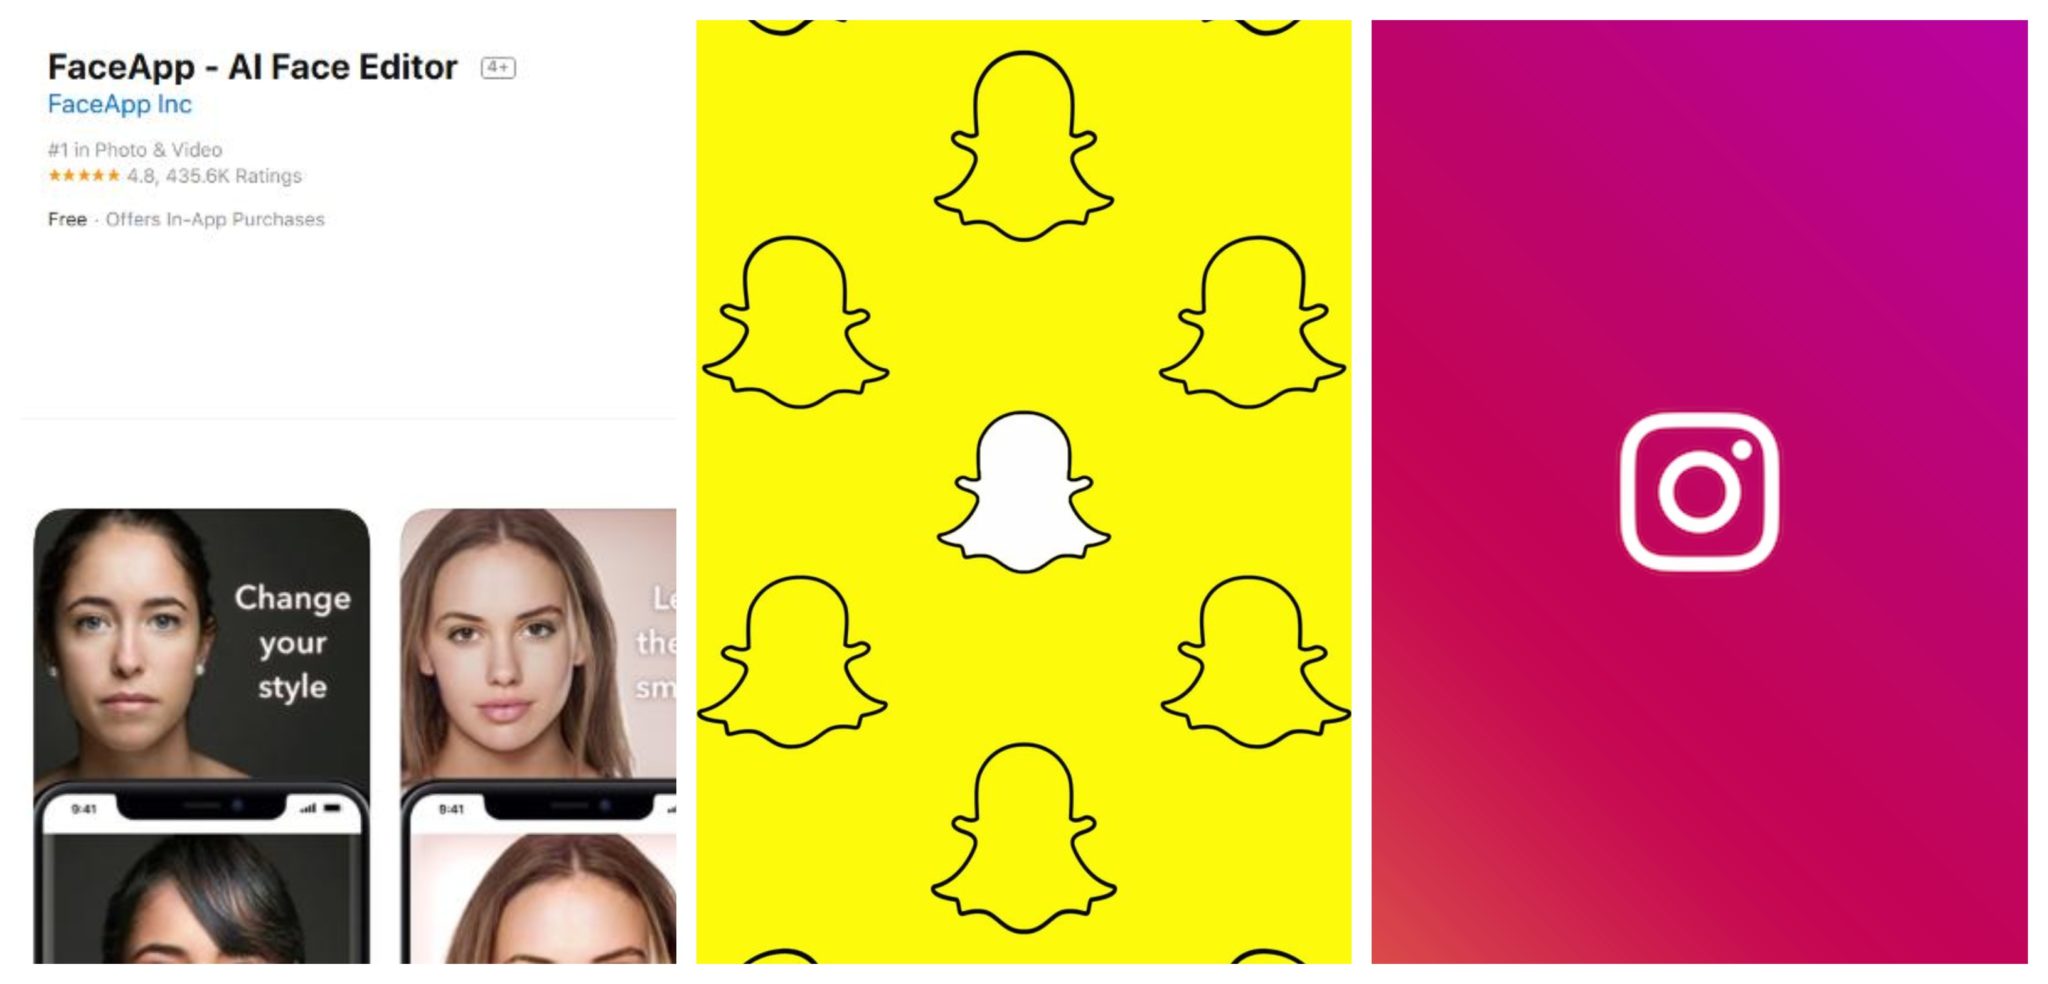 faceapp snapchat instagram data stealing